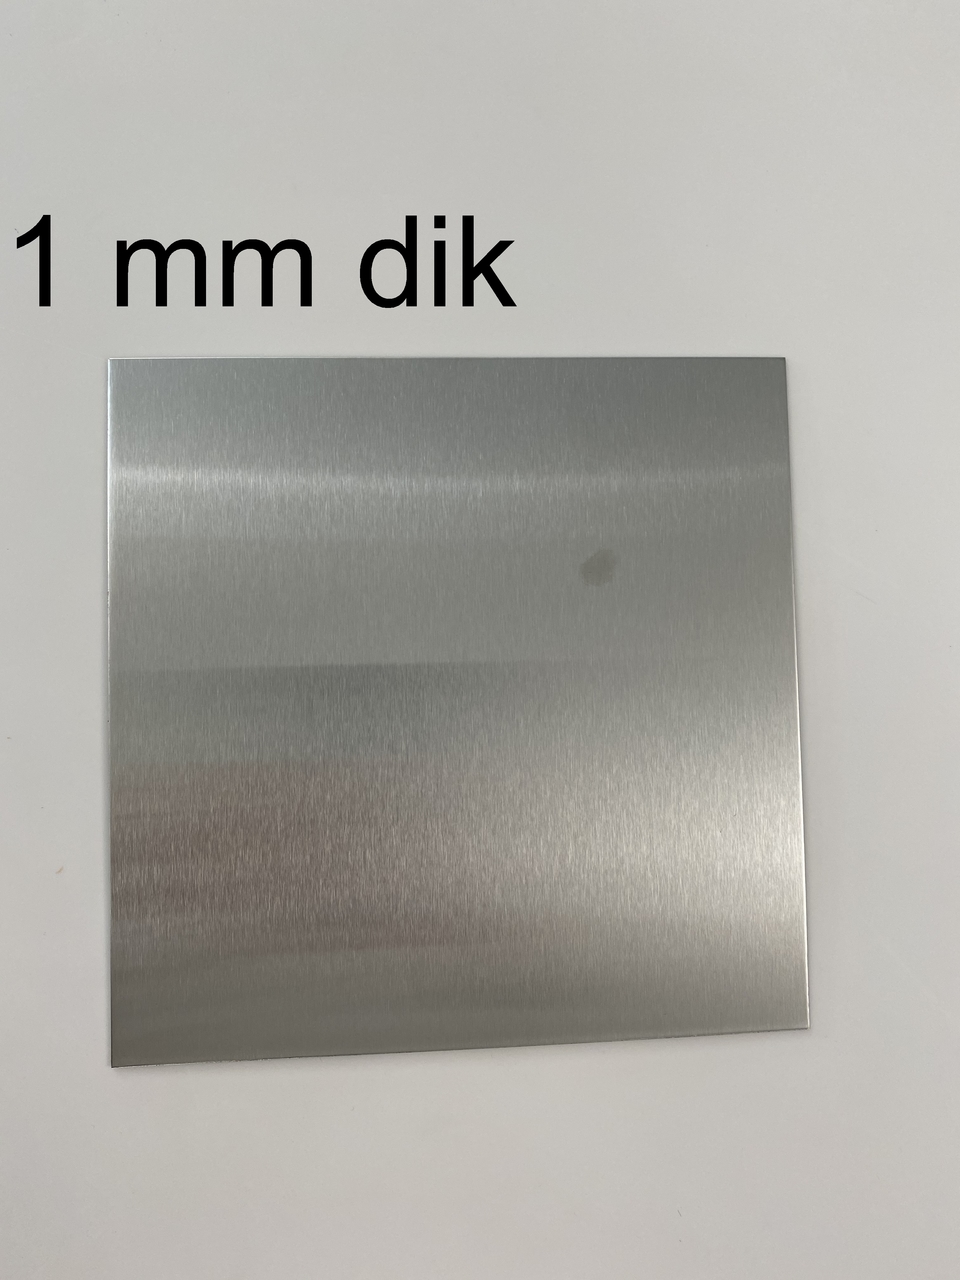 Gelijk Lol Slechte factor inox plaat 1mm dik - Metaalshop.be